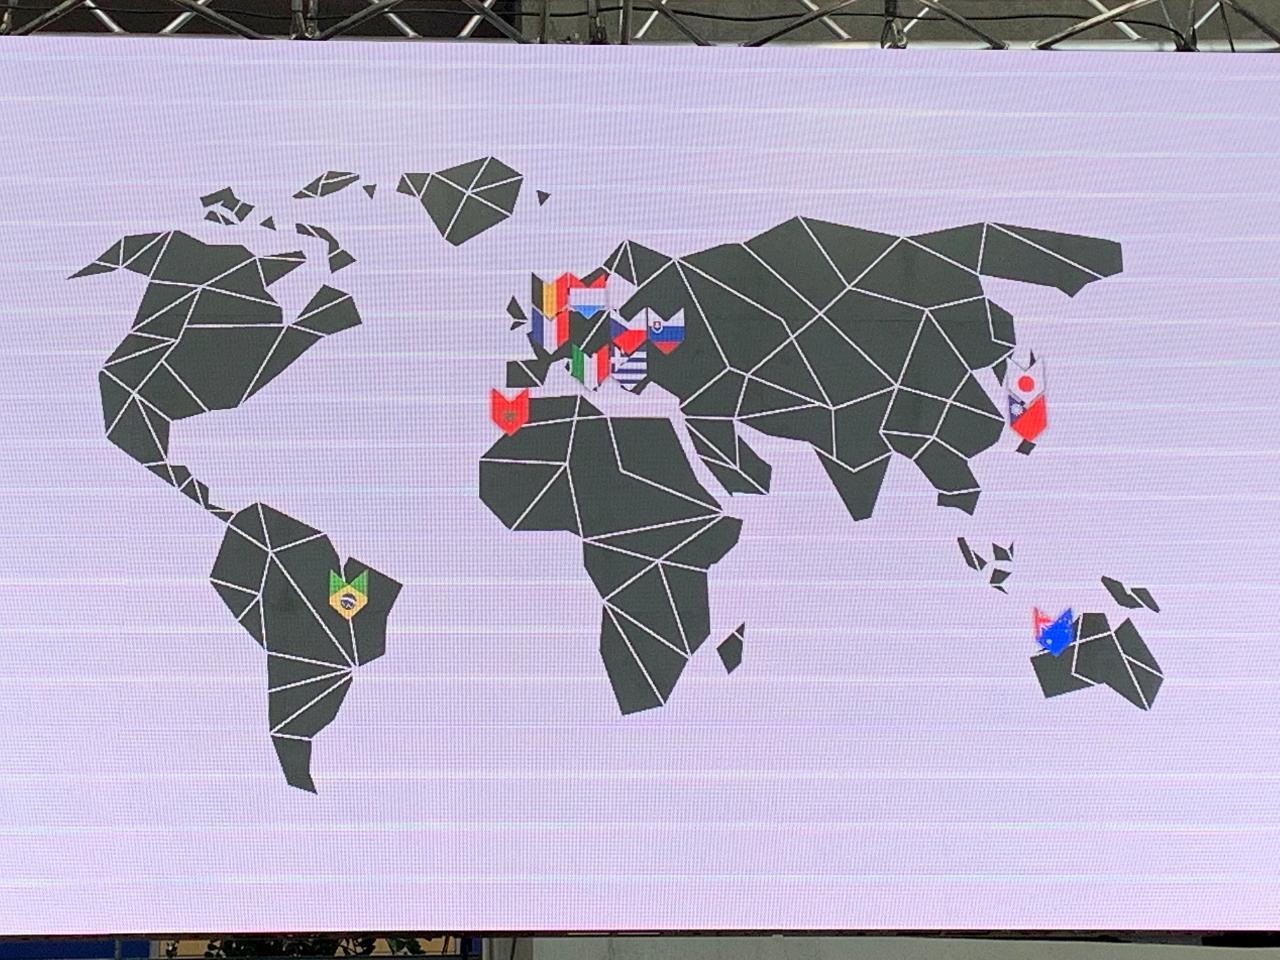 主辦單位以國旗標示參賽國在全球之位置 駐法國台北代表處